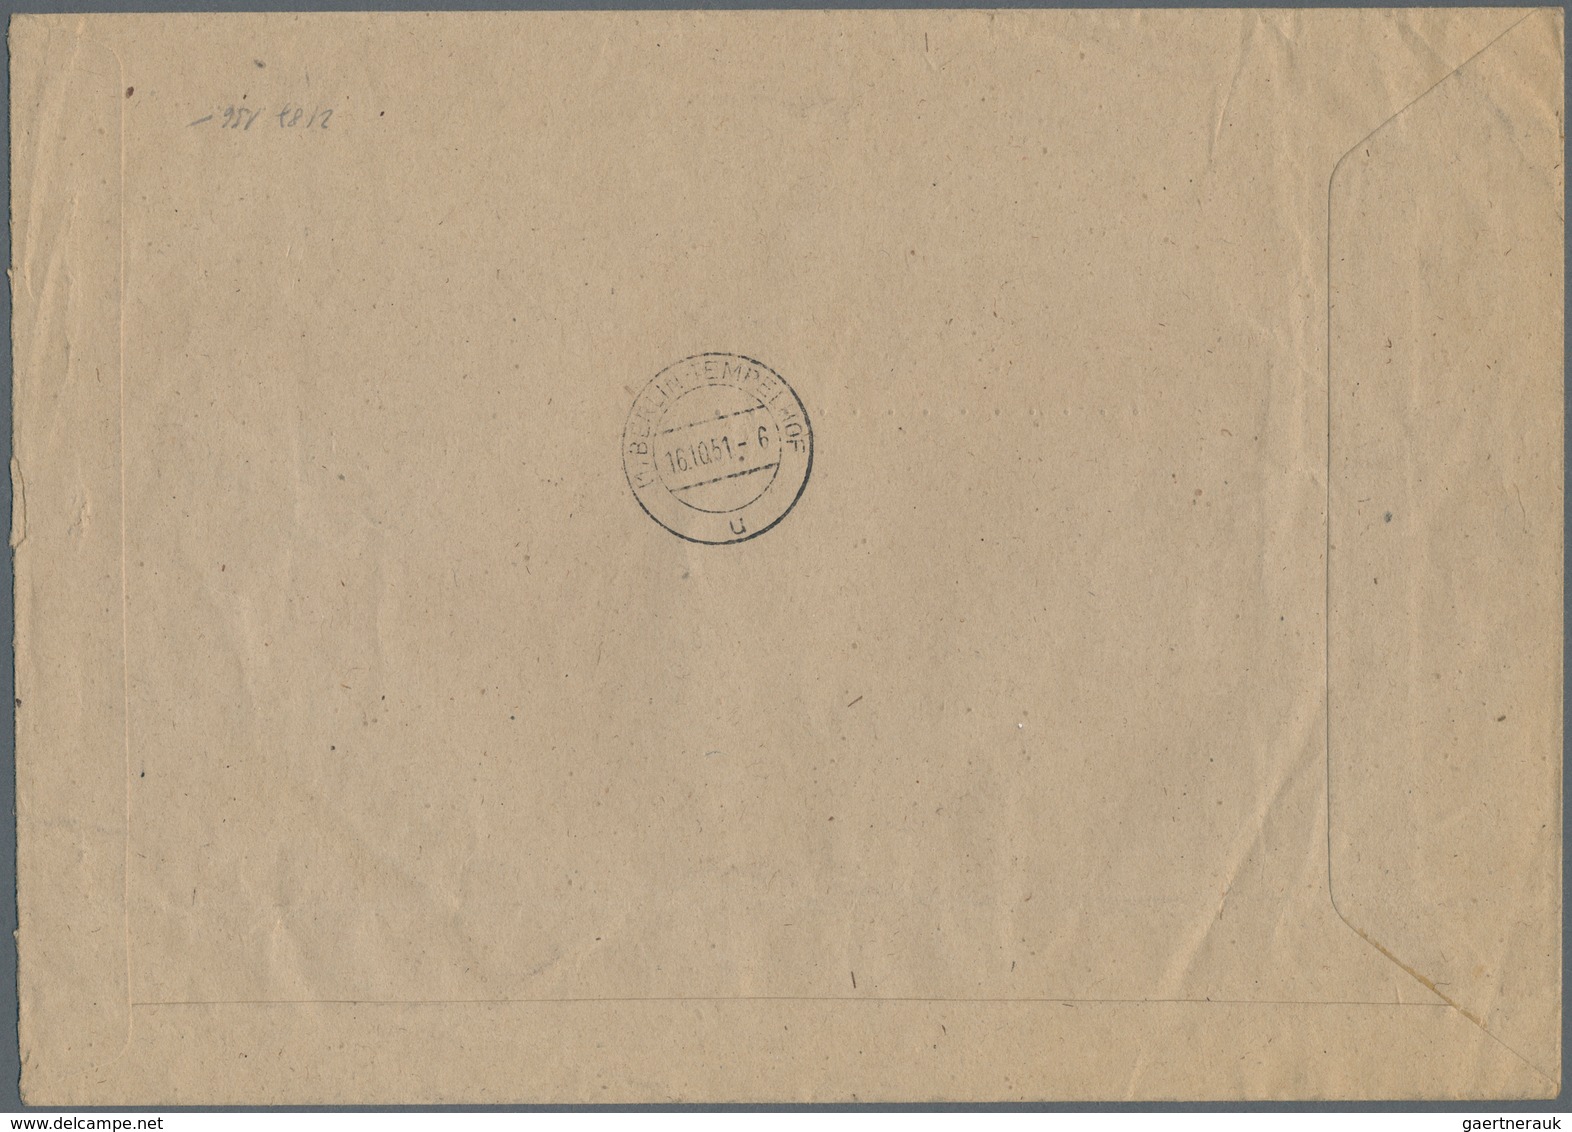 20624 Berlin - Postschnelldienst: 1949, Umschlag Cirka B5 Als Postsache, Gebührenfrei - Absender Senatsver - Covers & Documents